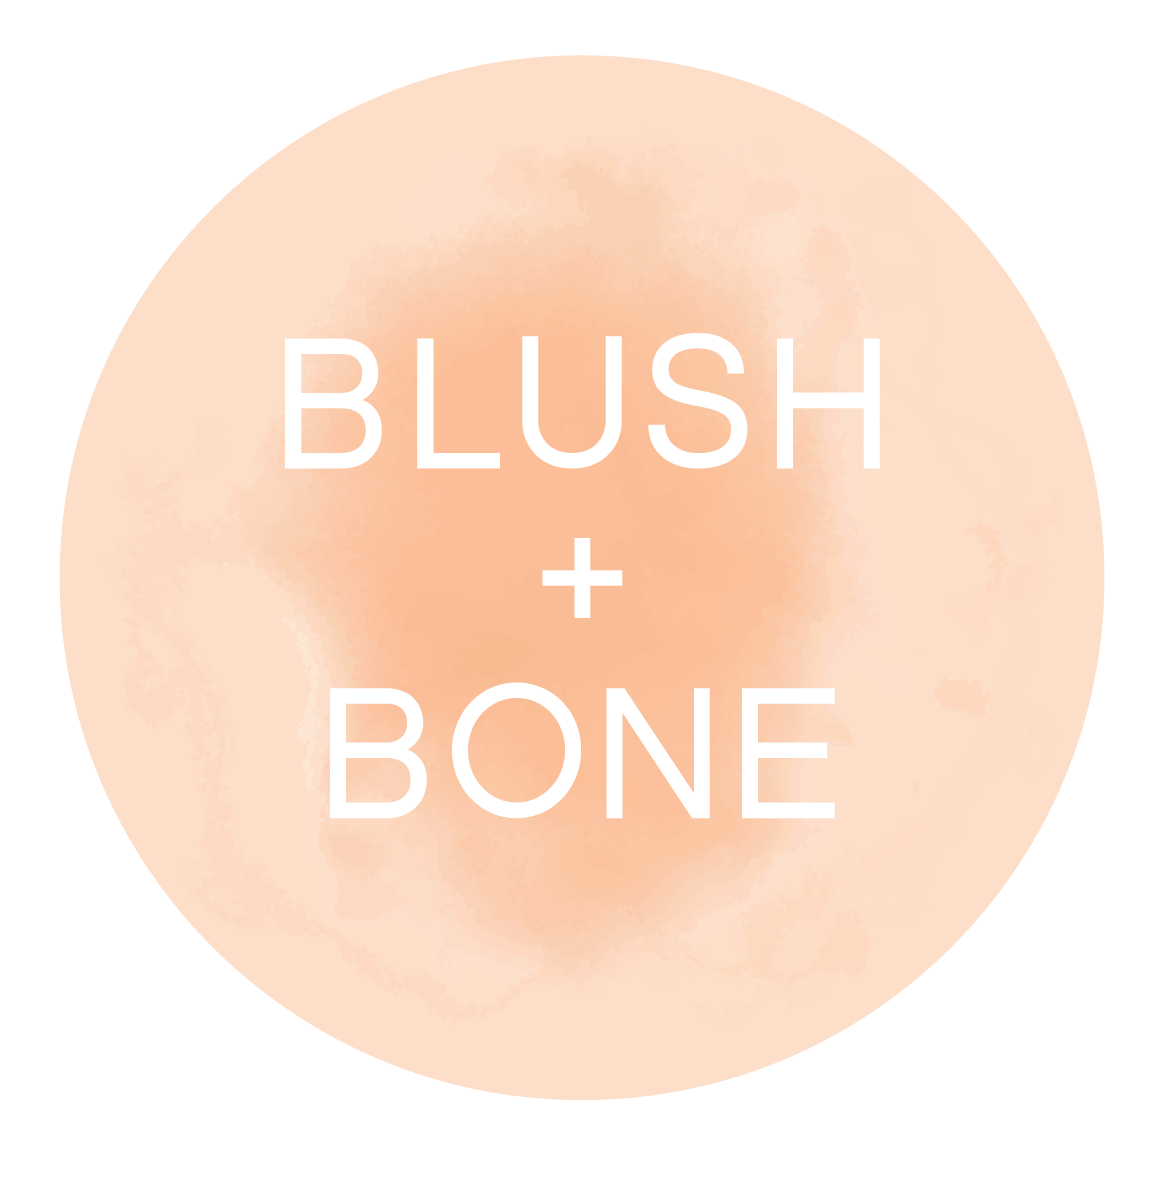 Blush + Bone